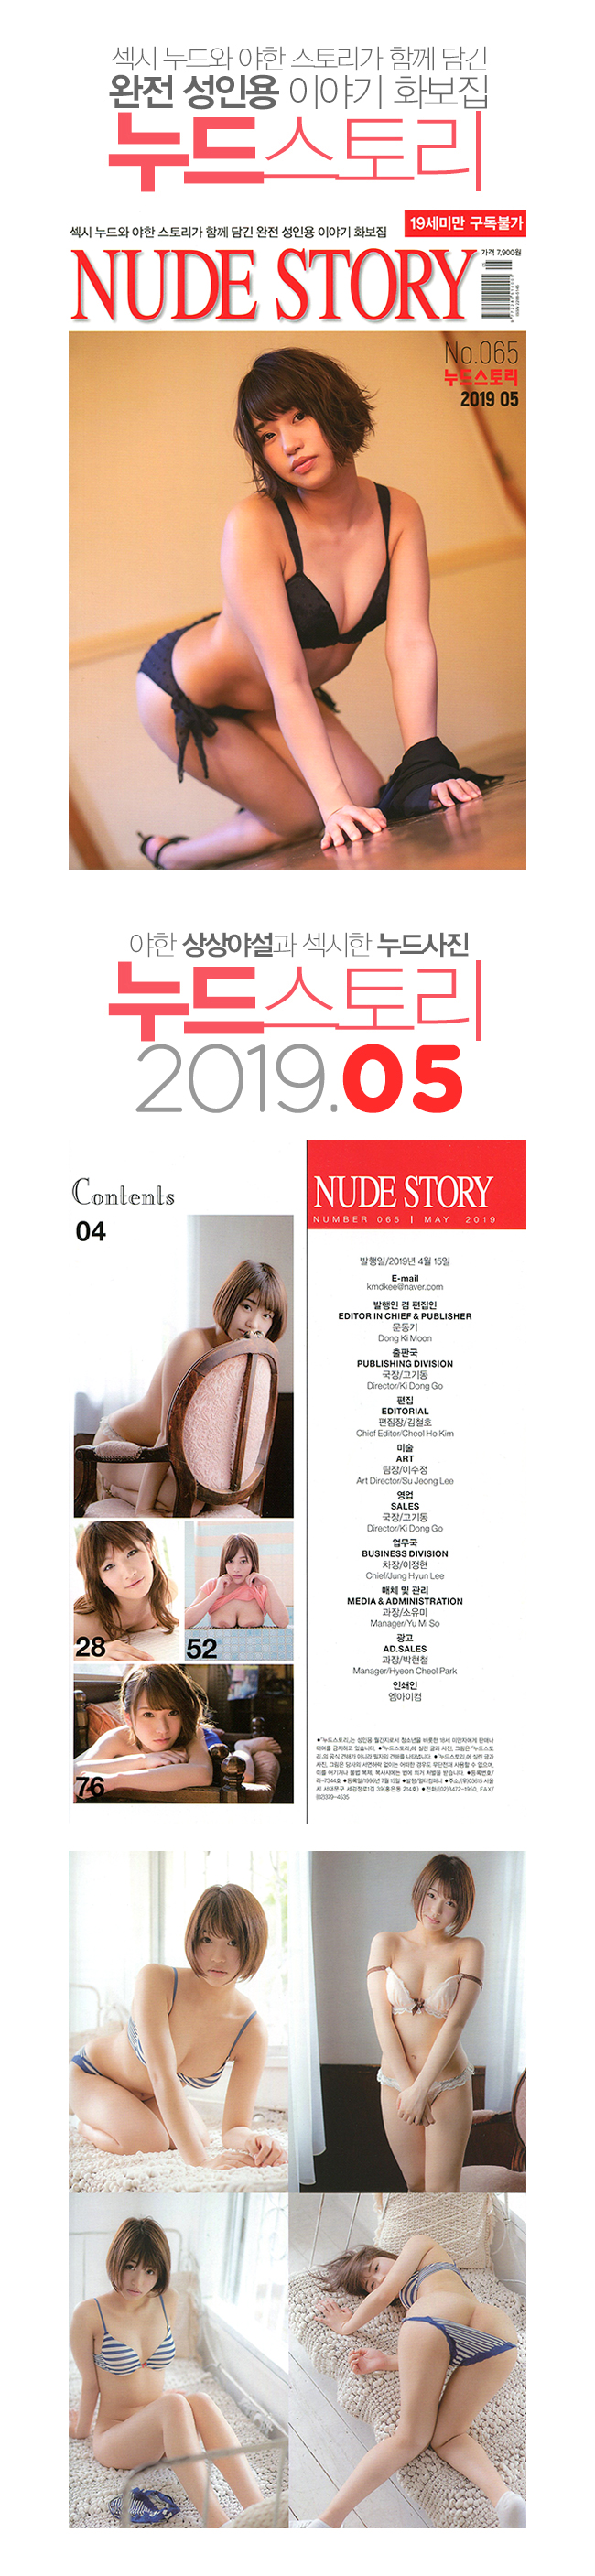 [누드스토리] NUDE STORY 2019년 5월 - 섹시 누드와 야한 스토리가 함께 담긴 완전 성인용 이야기 화보집